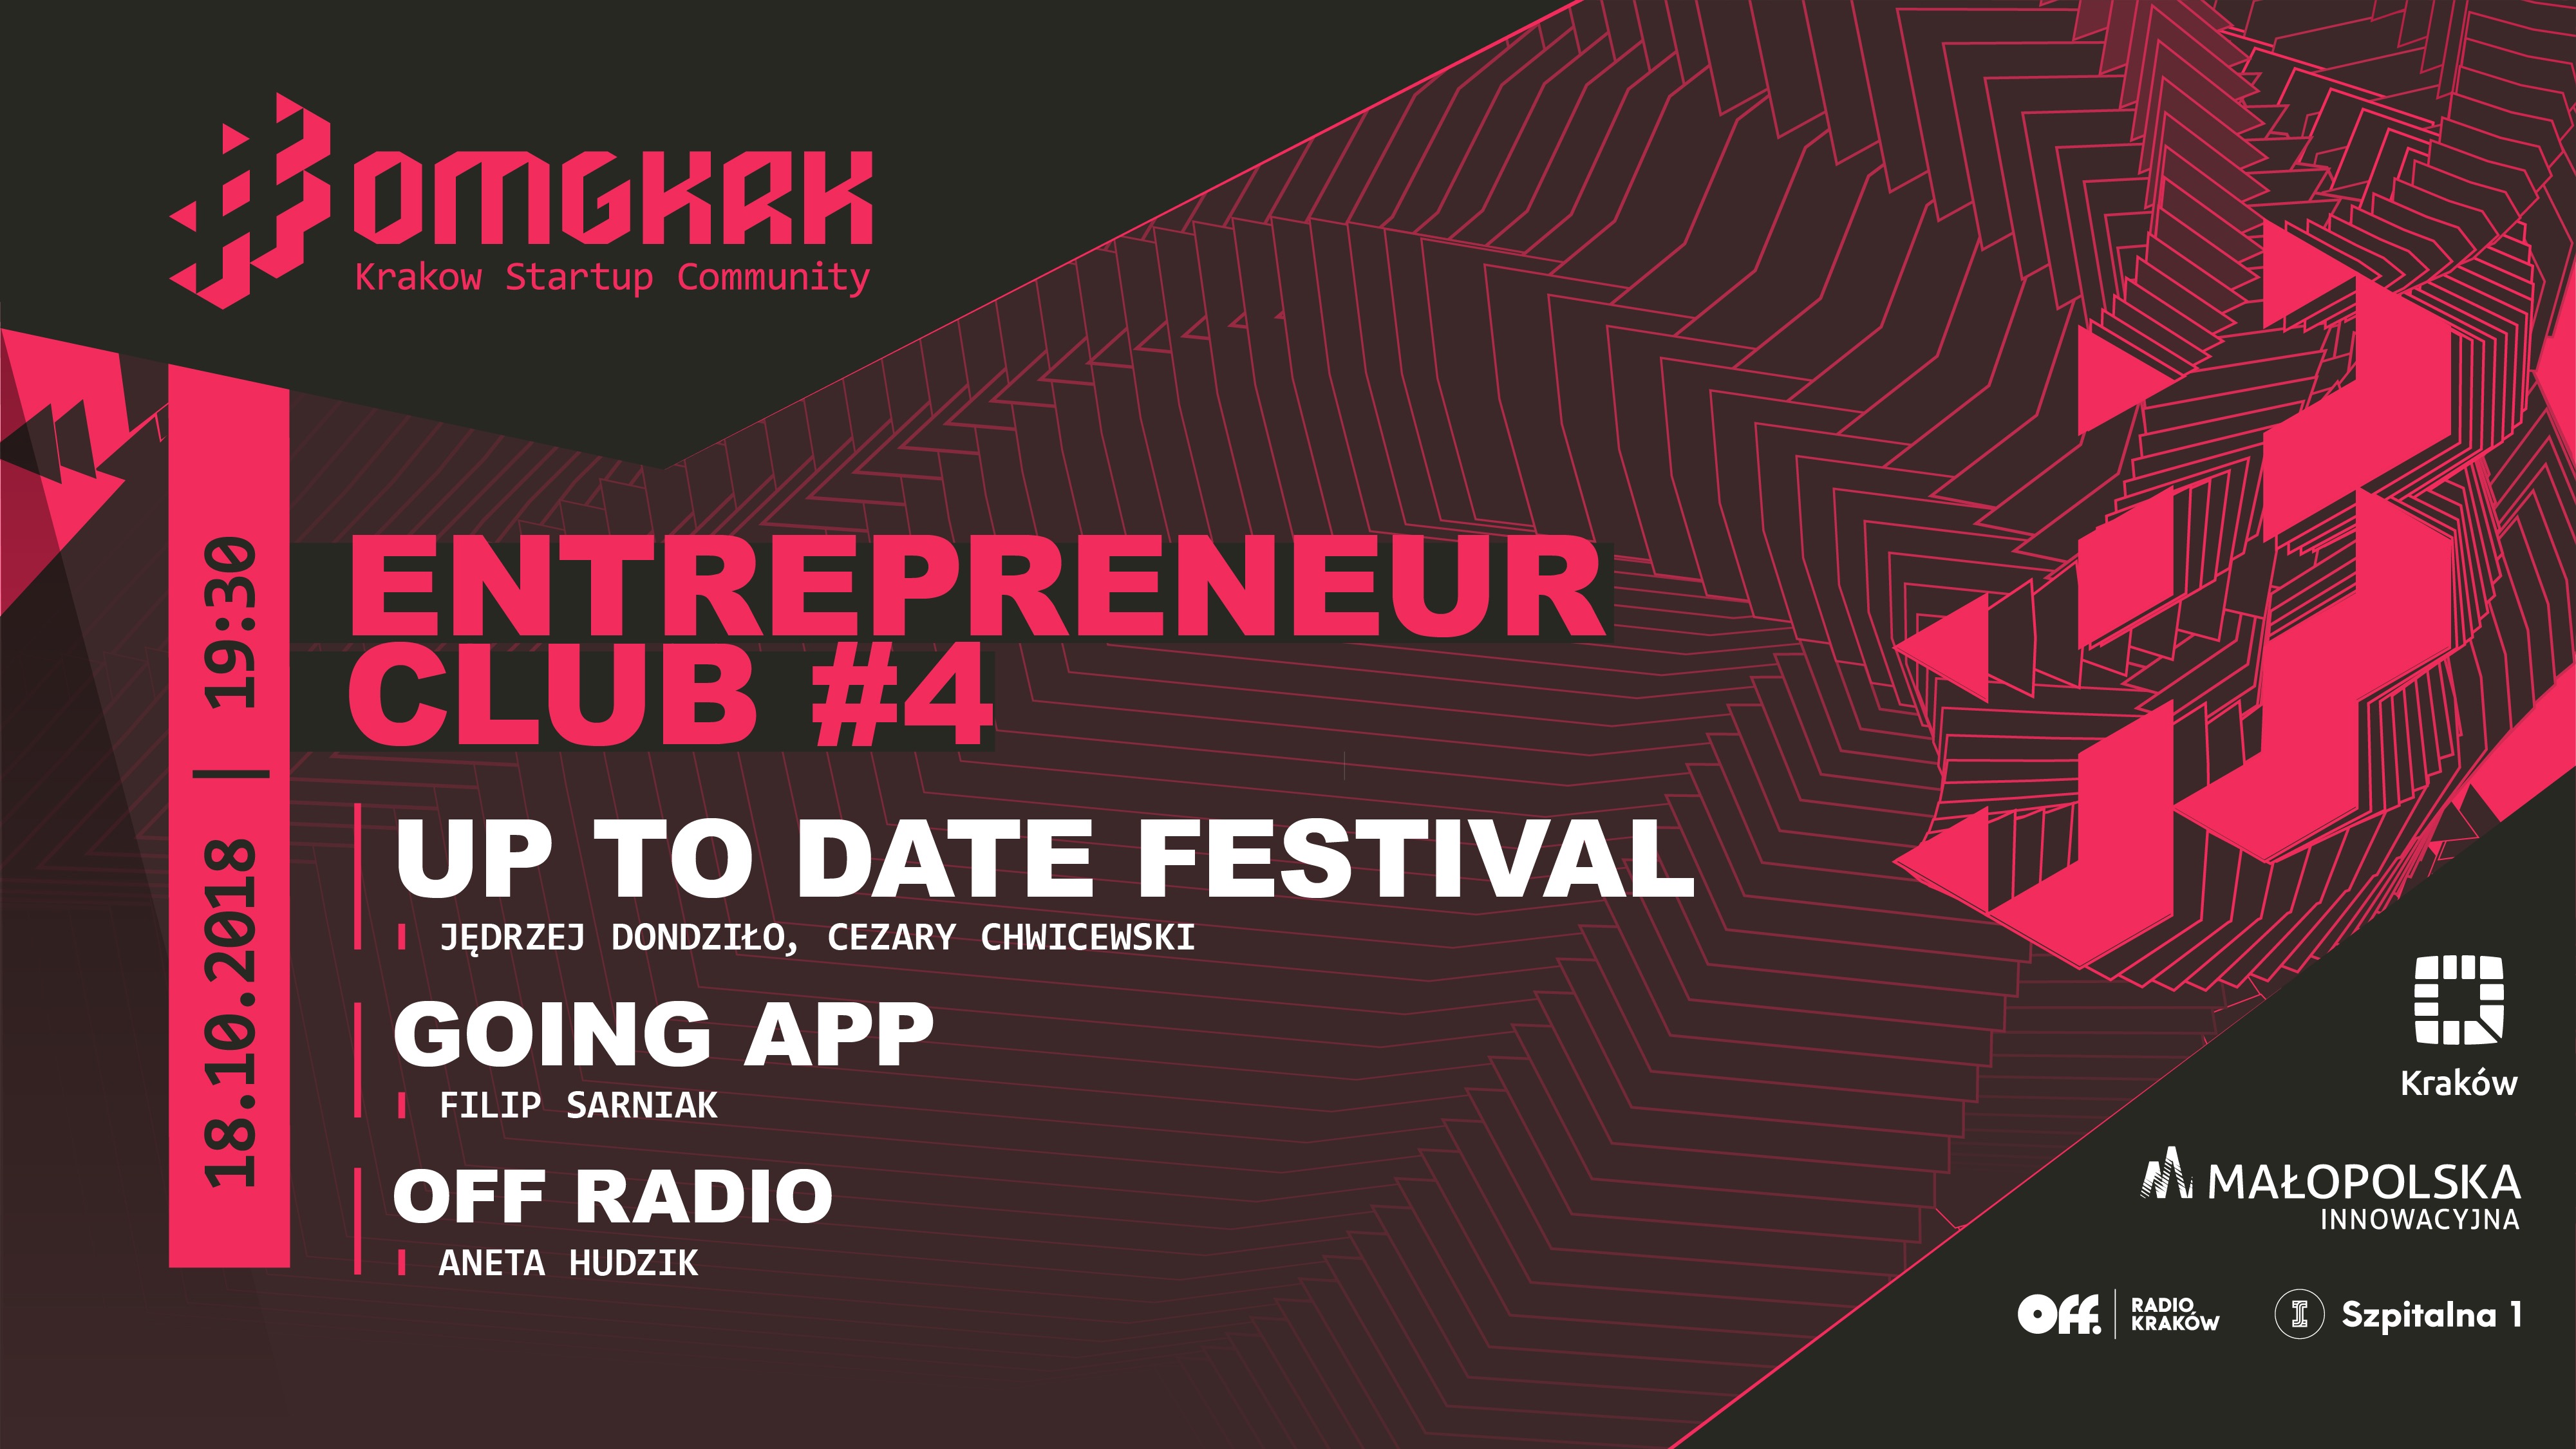 entrepreneur-club-4-start-krk-up-pazdziernik-2018